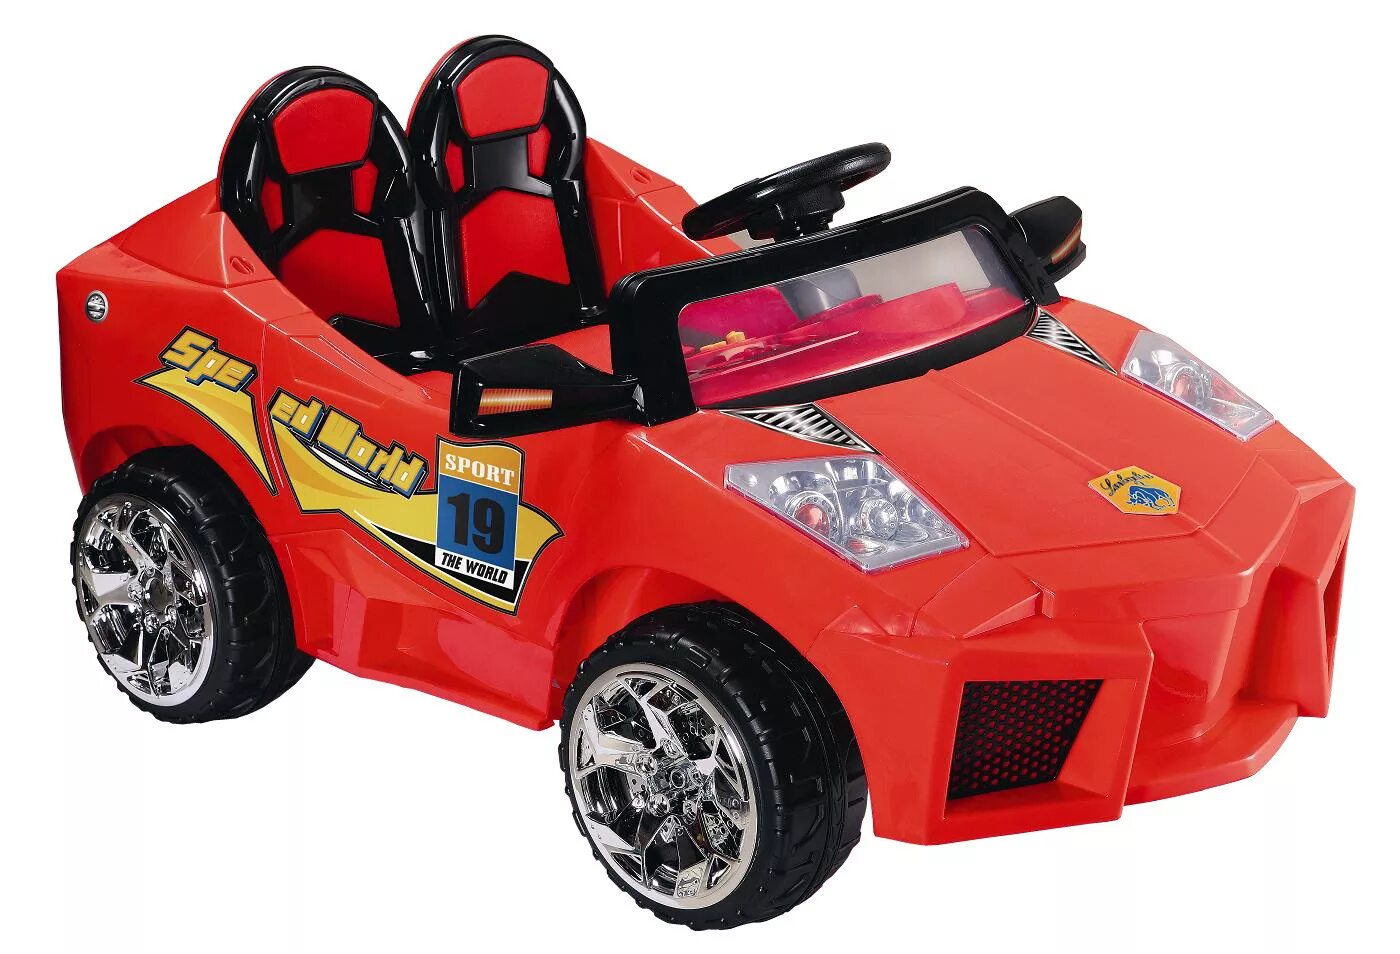 Toys toys машина. Электромобиль gb6675. Toy Stylo car. Toy car Flashcard.